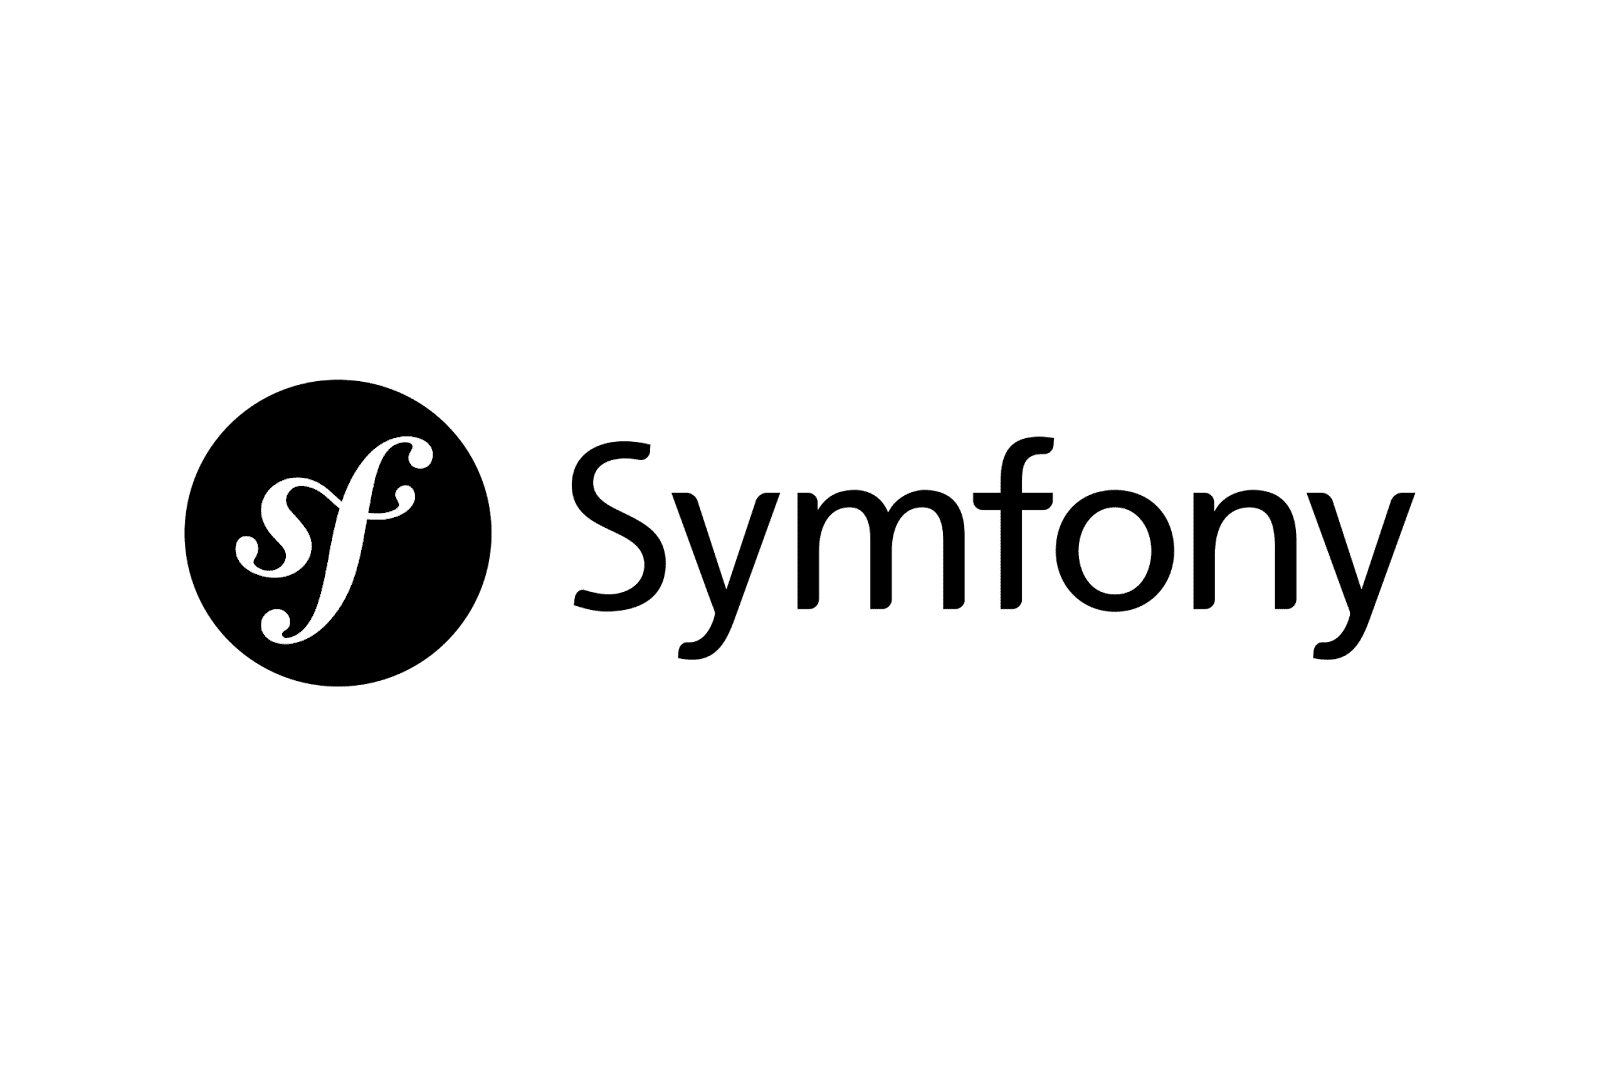 Symfony-logotypen.